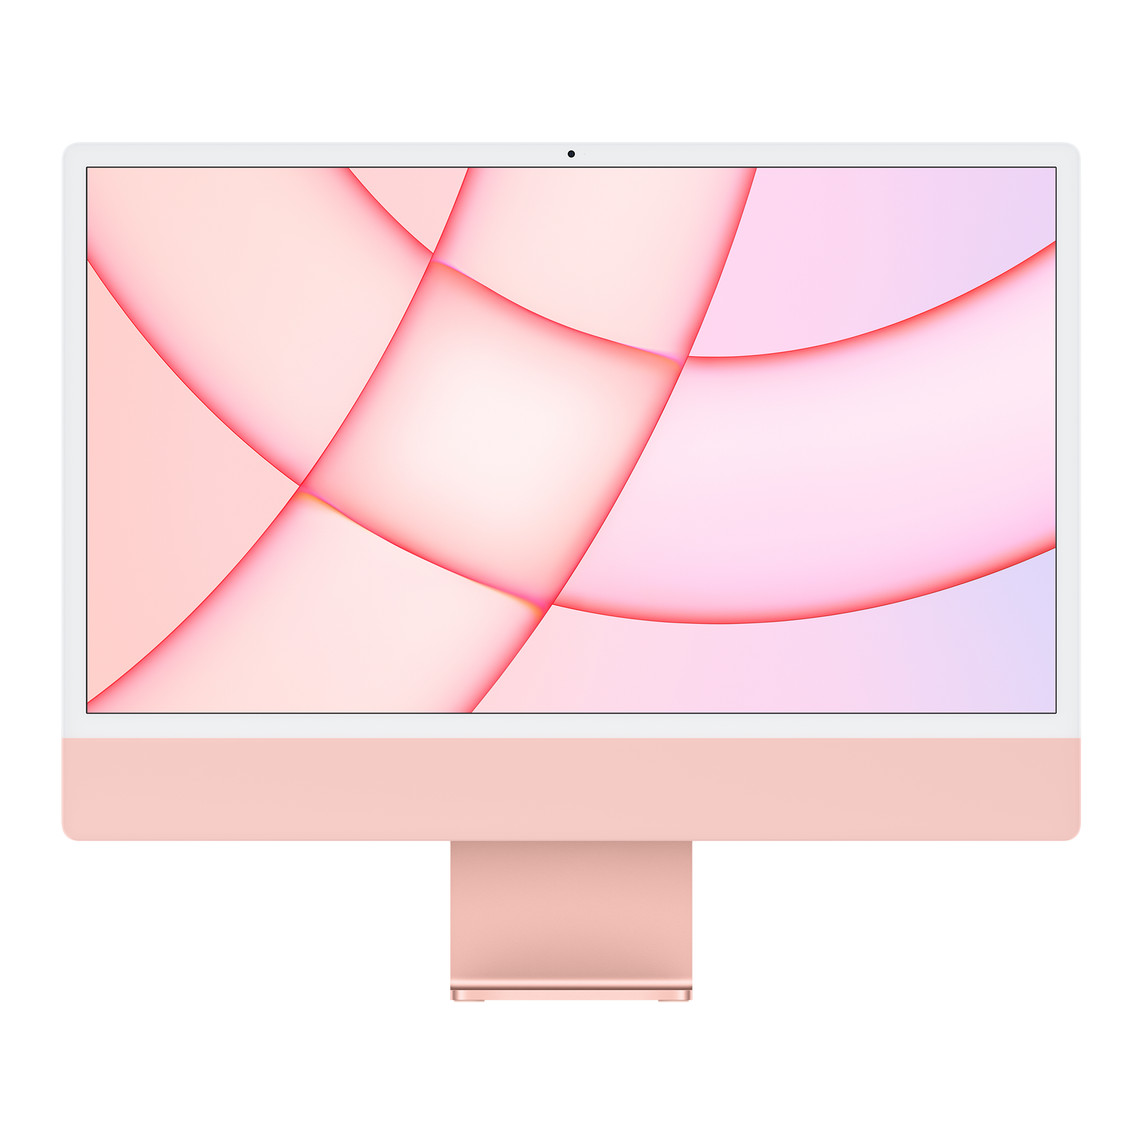 iMac 的正面外观，展示白色显示屏边框、粉色外壳和铝金属底座。